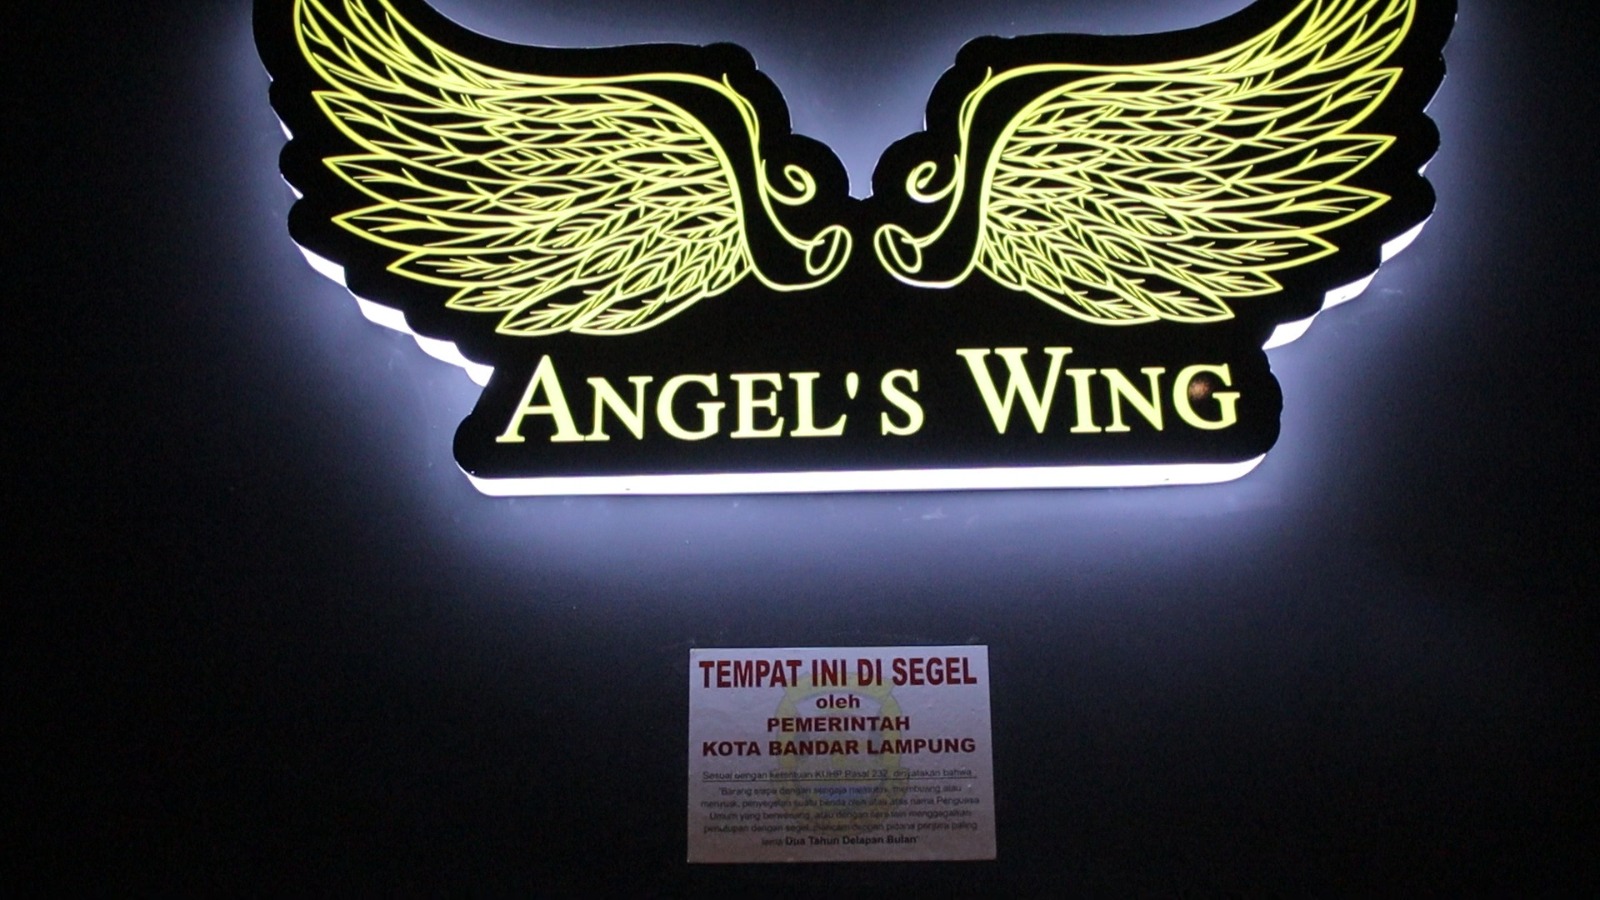 Pemerintah Kota (Pemkot) Bandar Lampung secara resmi telah menutup tempat hiburan malam THM Angel’s Wing di Jalan Raden Intan disegel pemerintah kota Bandar Lampung, pada Sabtu (4/2/2023) malam.